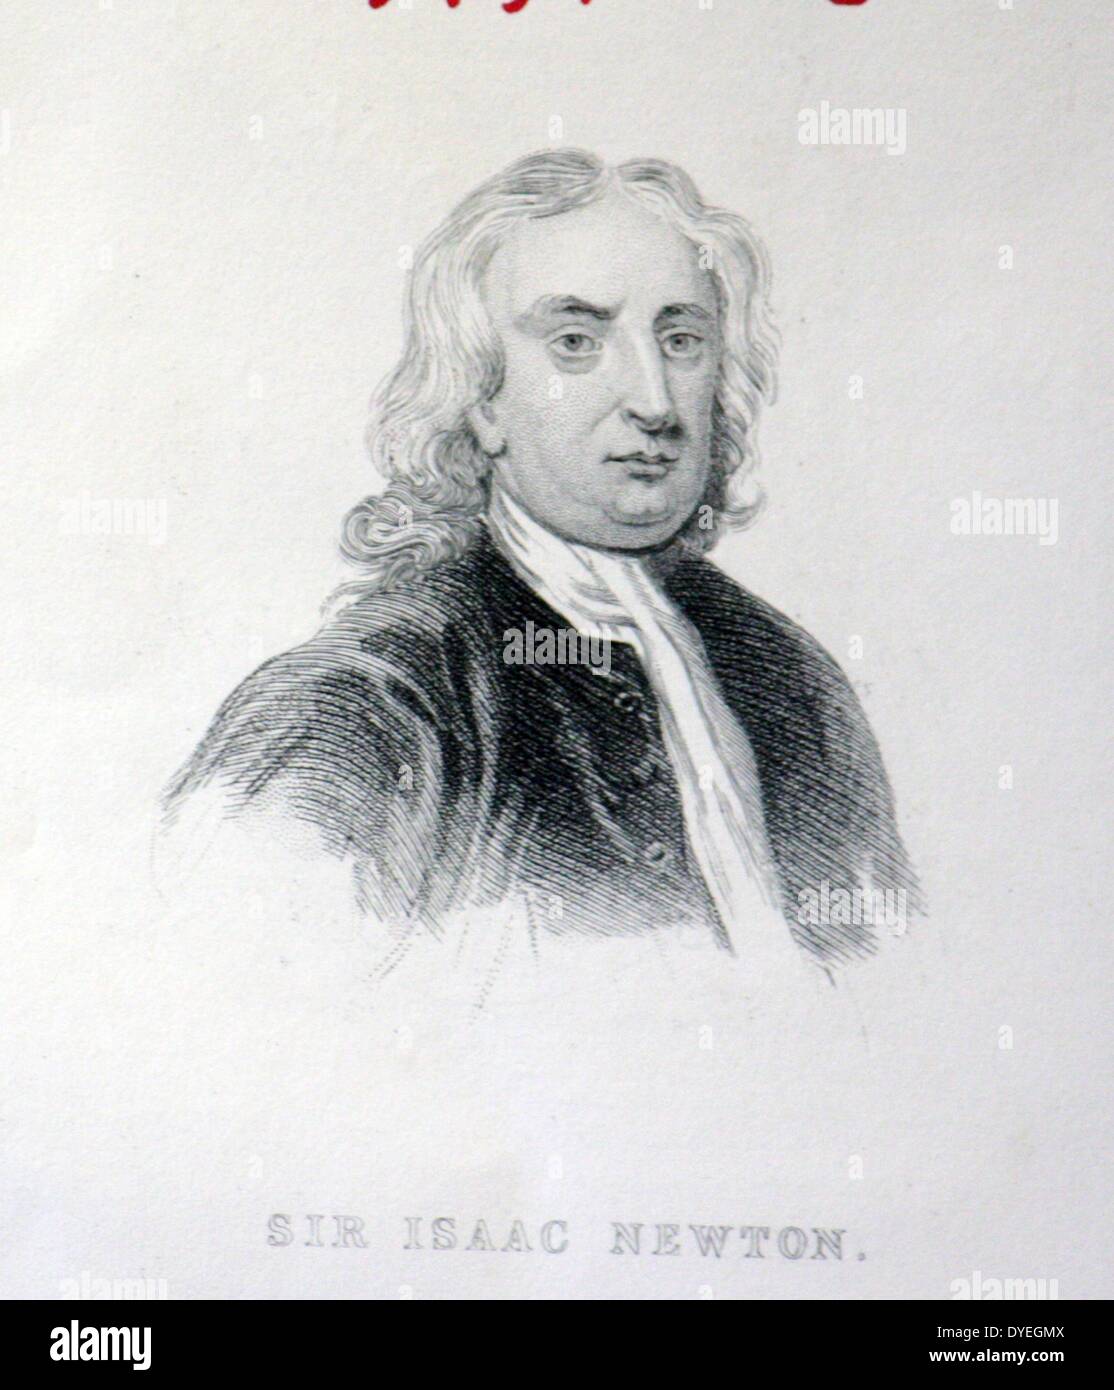 Sir Isaac Newton (1642-1727) war ein englischer Physiker und Mathematiker, ist weithin als einer der einflussreichsten Wissenschaftler aller Zeiten und als eine zentrale Figur in der wissenschaftlichen Revolution betrachtet. Stockfoto